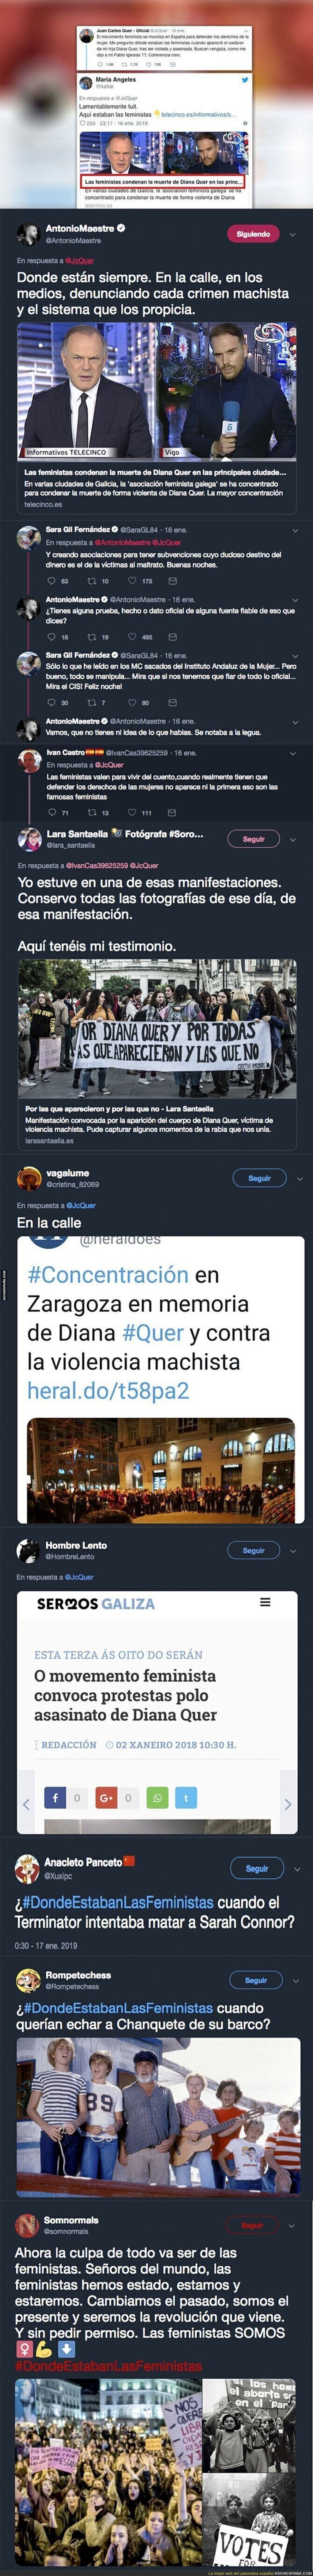 El padre de Diana Quer se pregunta donde estaban las feministas cuando mataron a su hija y Twitter responde